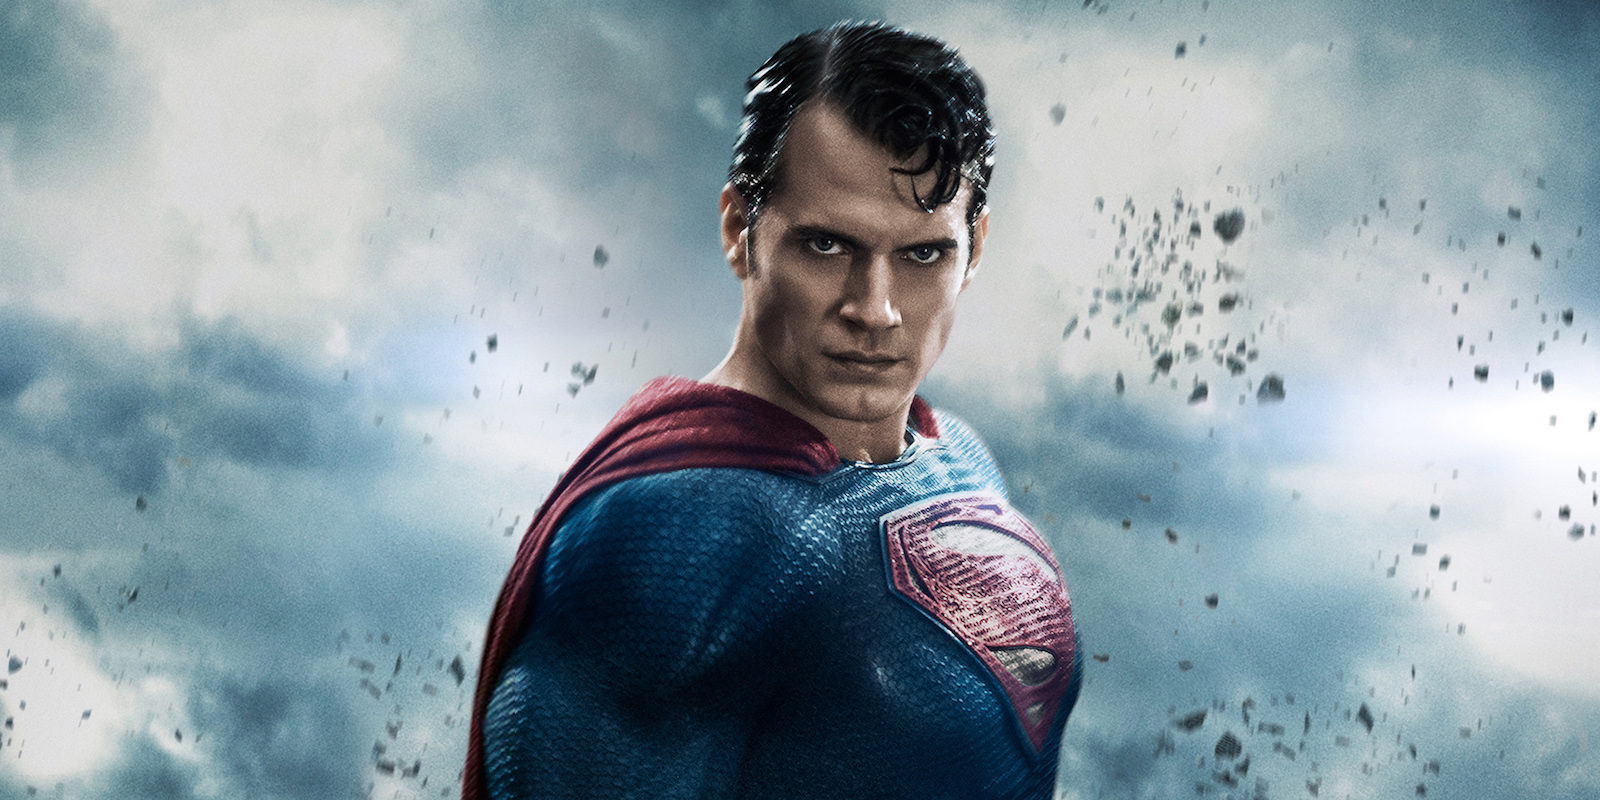 Los fans quieren que Superman tenga bigote en 'La Liga de la Justicia'